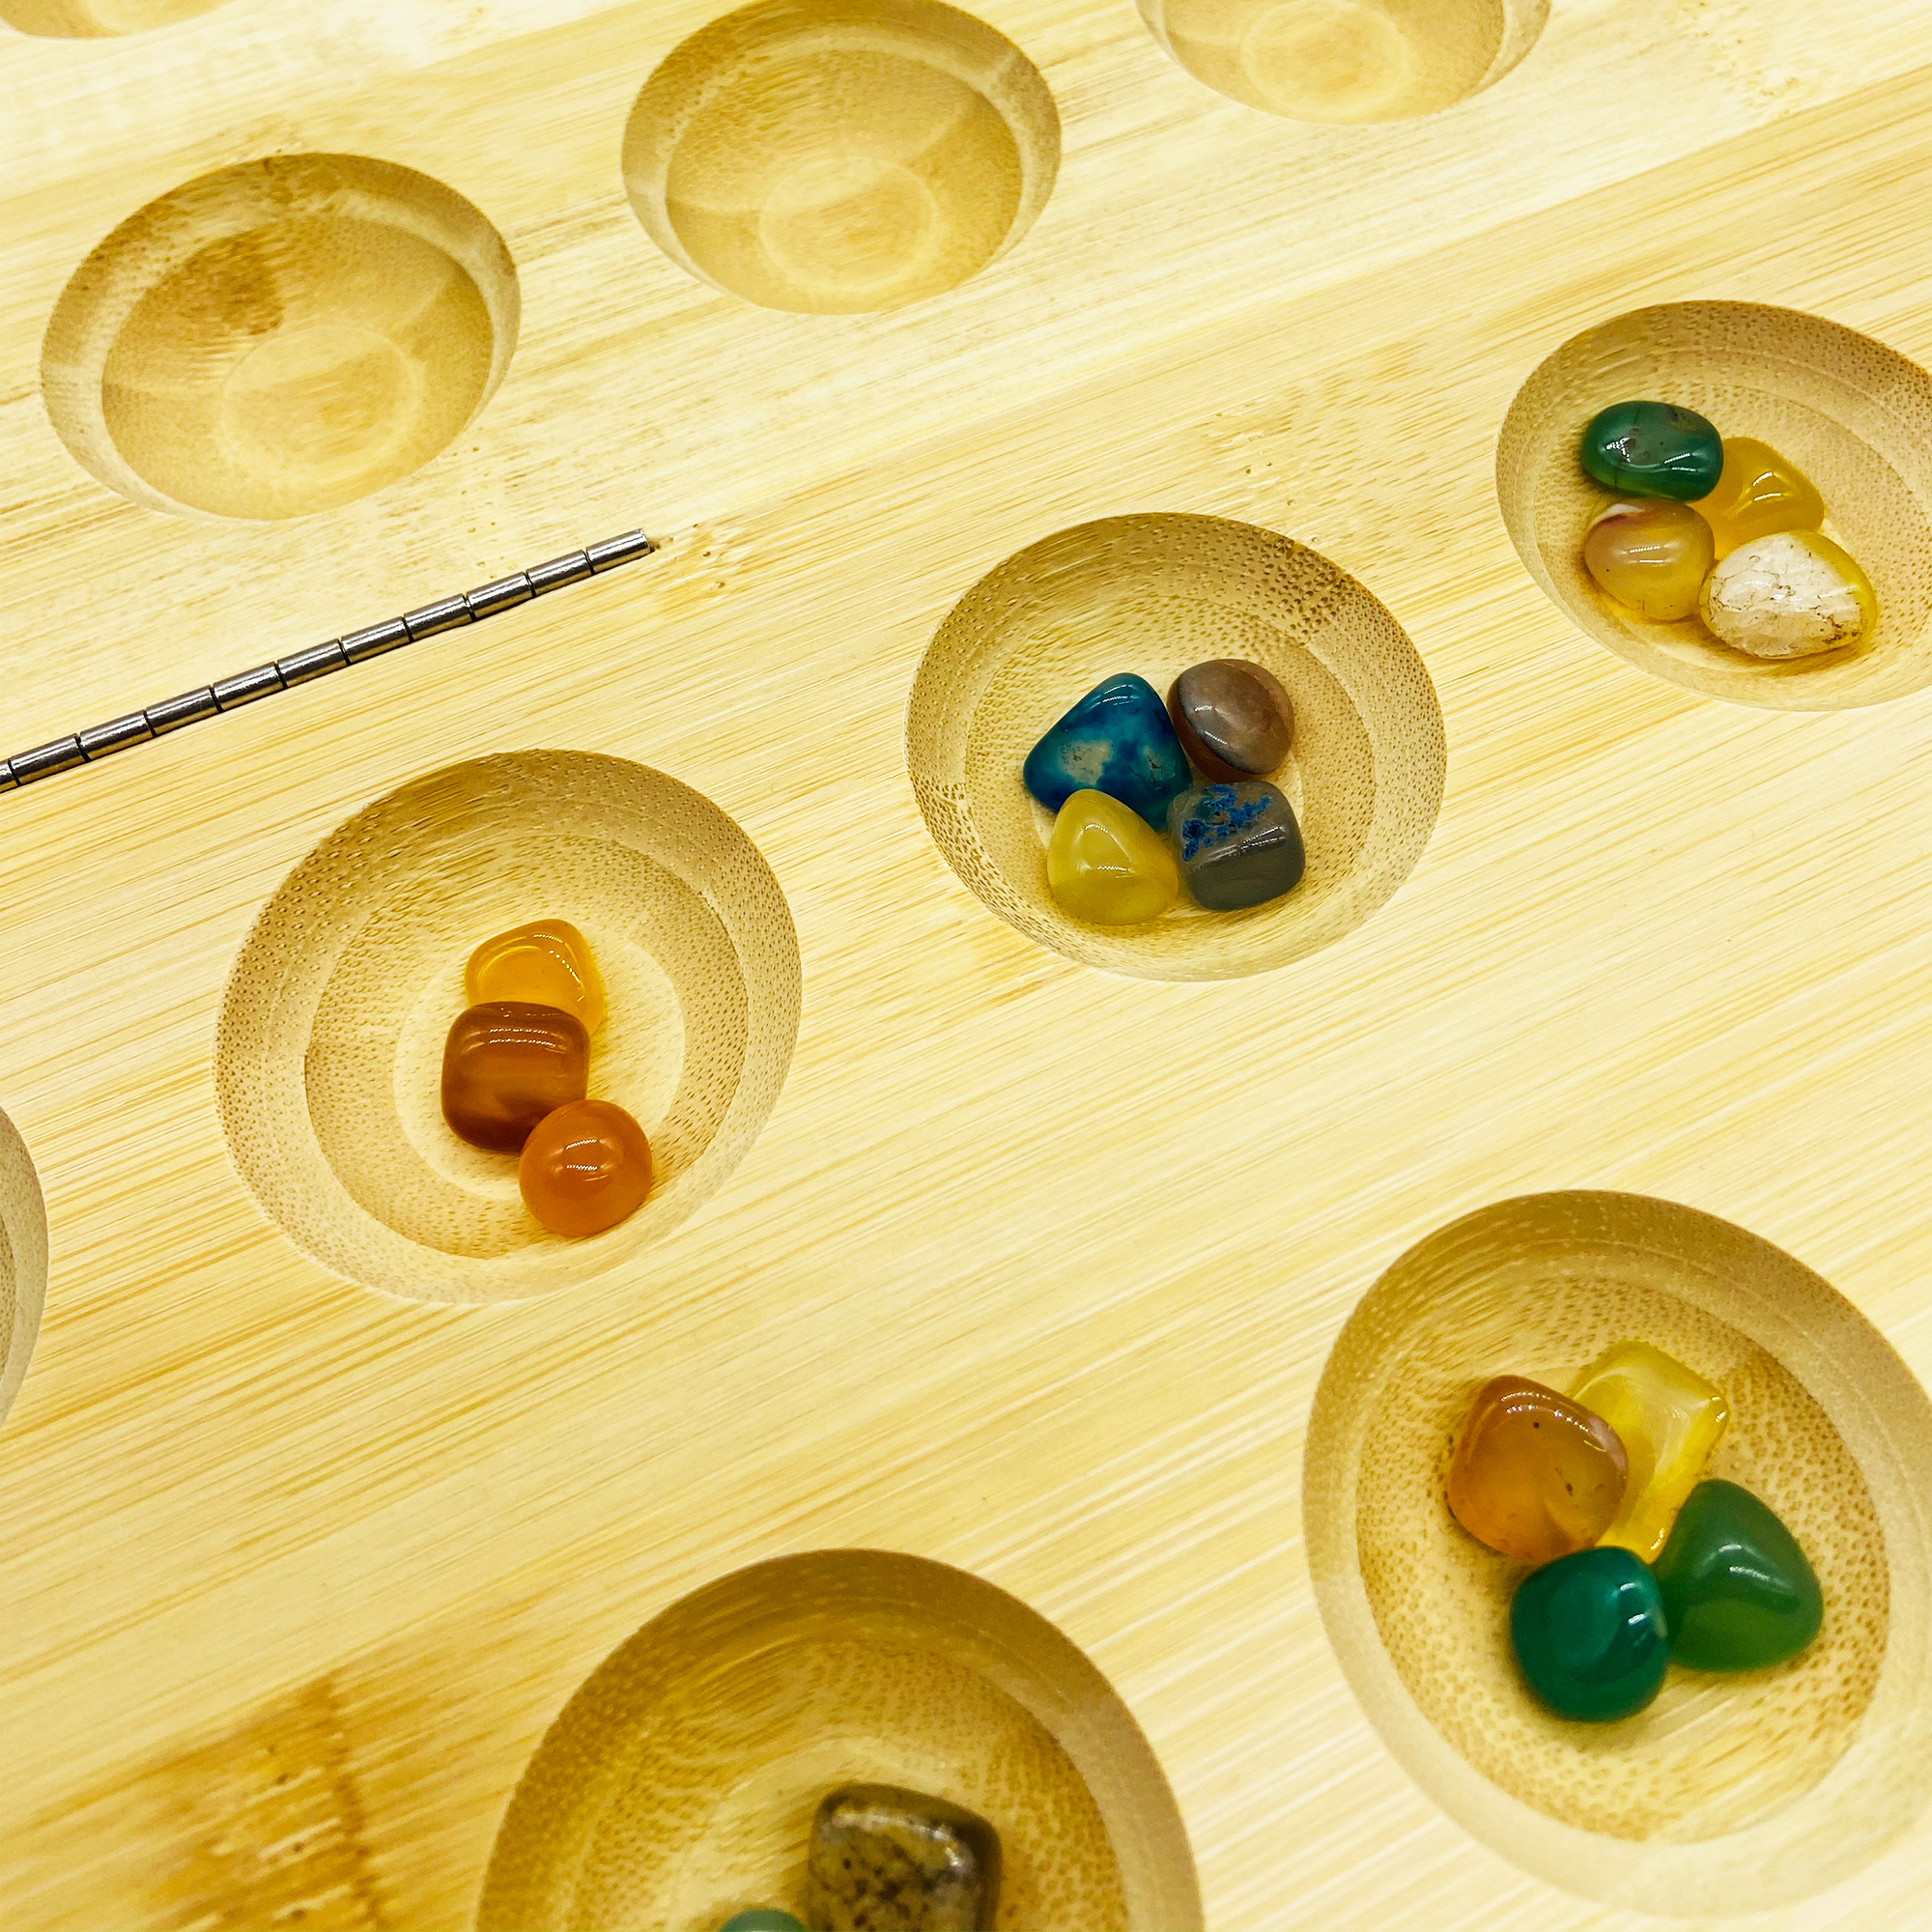 GICO Steinchenspiel Hus Bao groß aus Holz mit Edelsteinen. Das Strategiespiel für Jung und Alt bekannt aus den Kindergarten - 7953